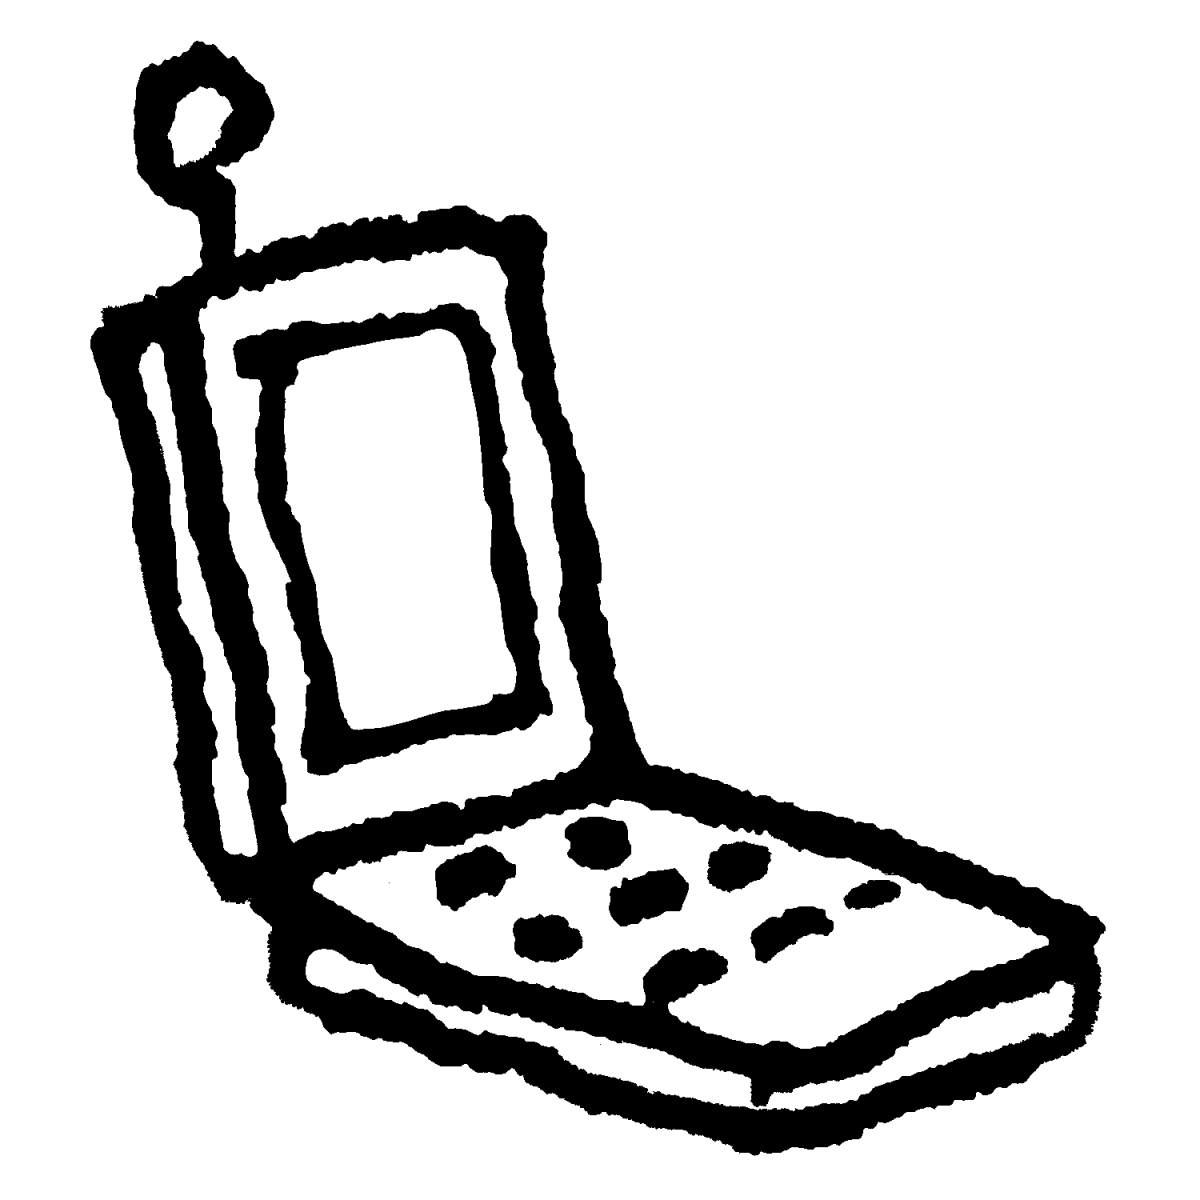 ガラパゴス携帯のイラスト / Flip phone Illustration